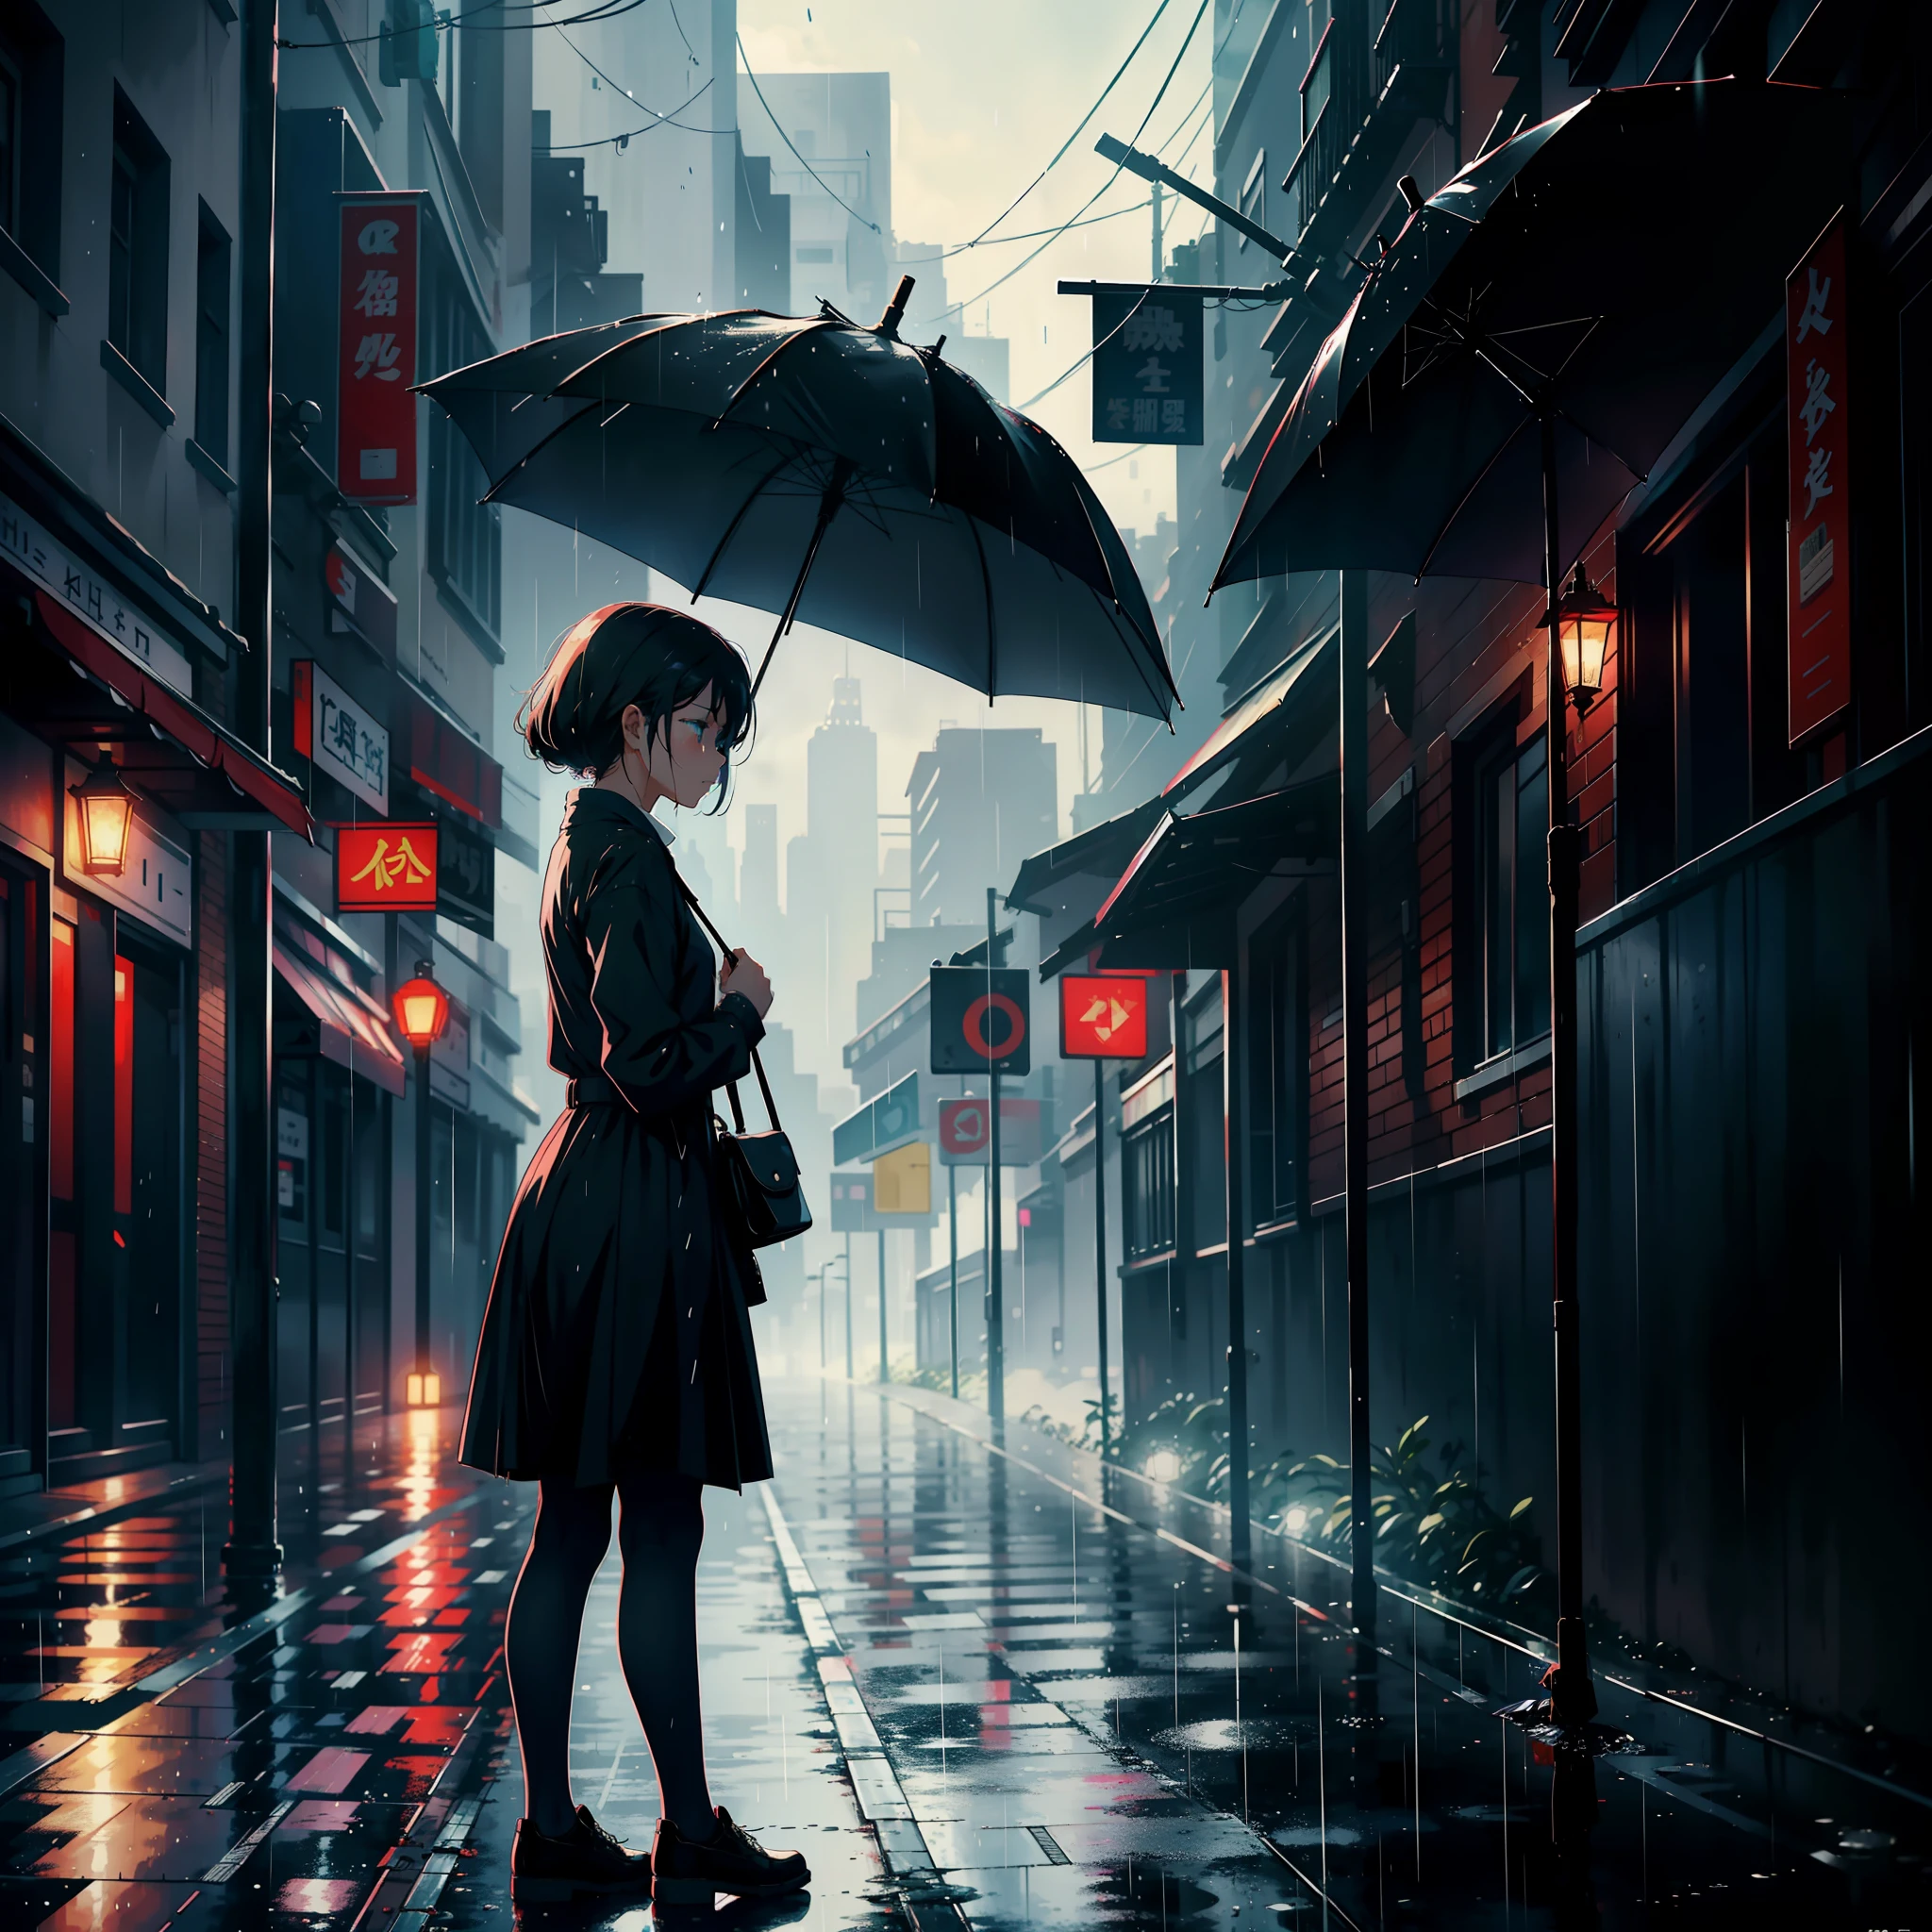 一个撑着伞的女孩站在路边, 哭, 看起来悲伤又下着雨